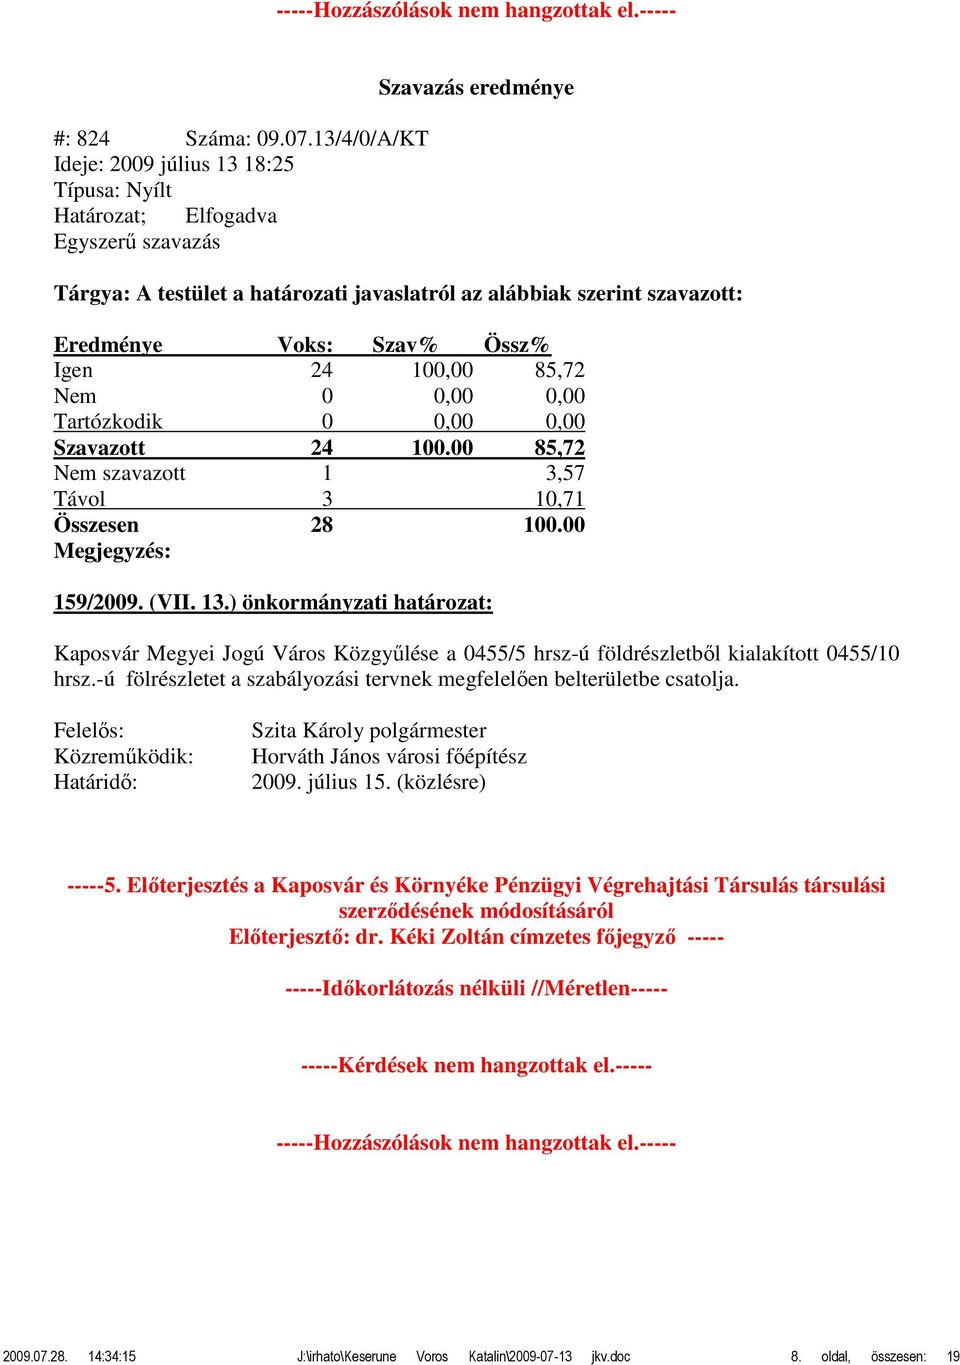 00 85,72 Nem szavazott 1 3,57 159/2009. (VII. 13.) önkormányzati határozat: Kaposvár Megyei Jogú Város Közgyűlése a 0455/5 hrsz-ú földrészletből kialakított 0455/10 hrsz.